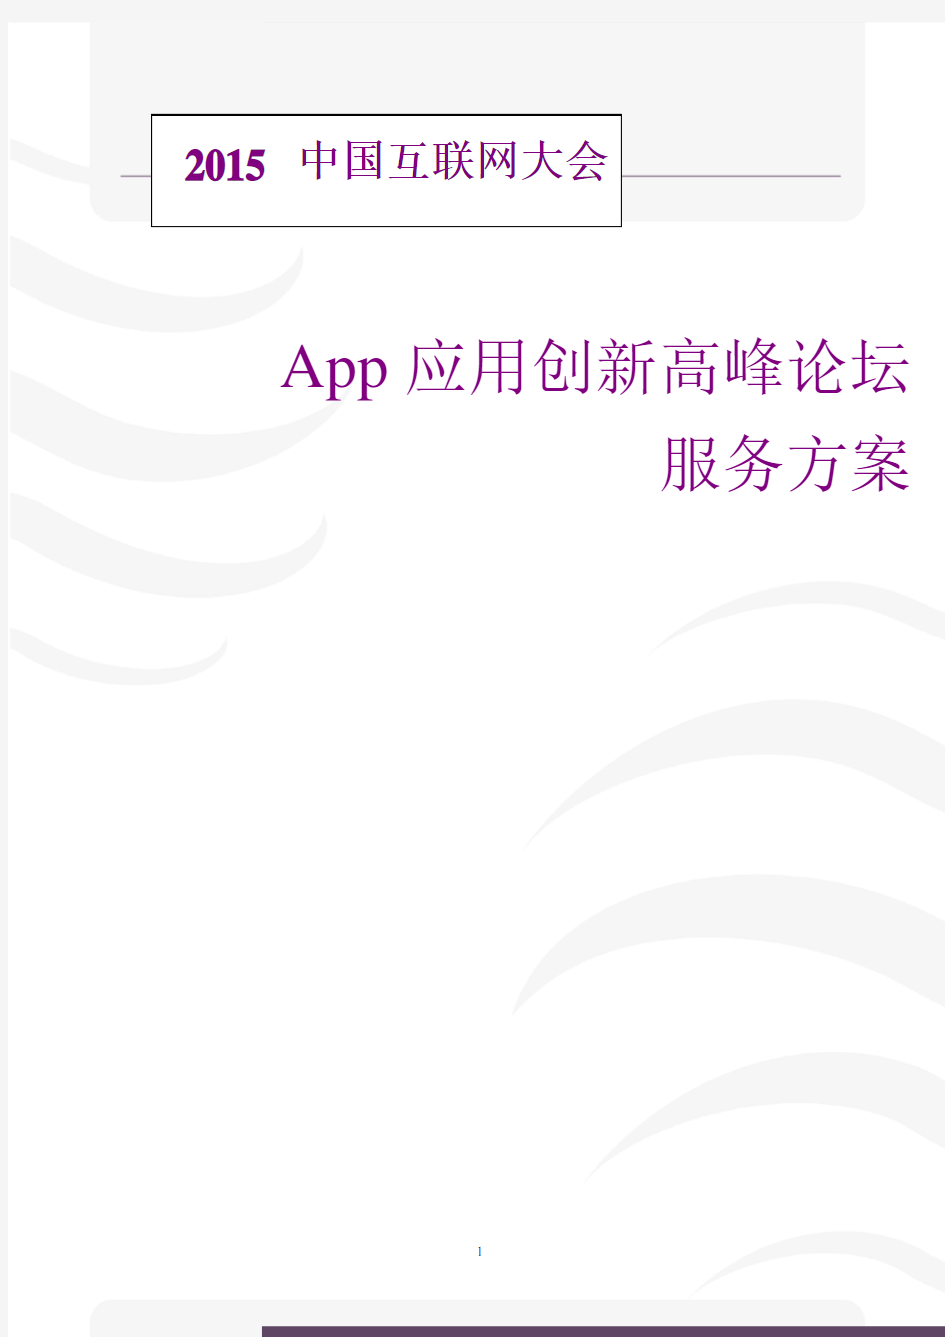 中国互联网大会App峰会服务方案-更新